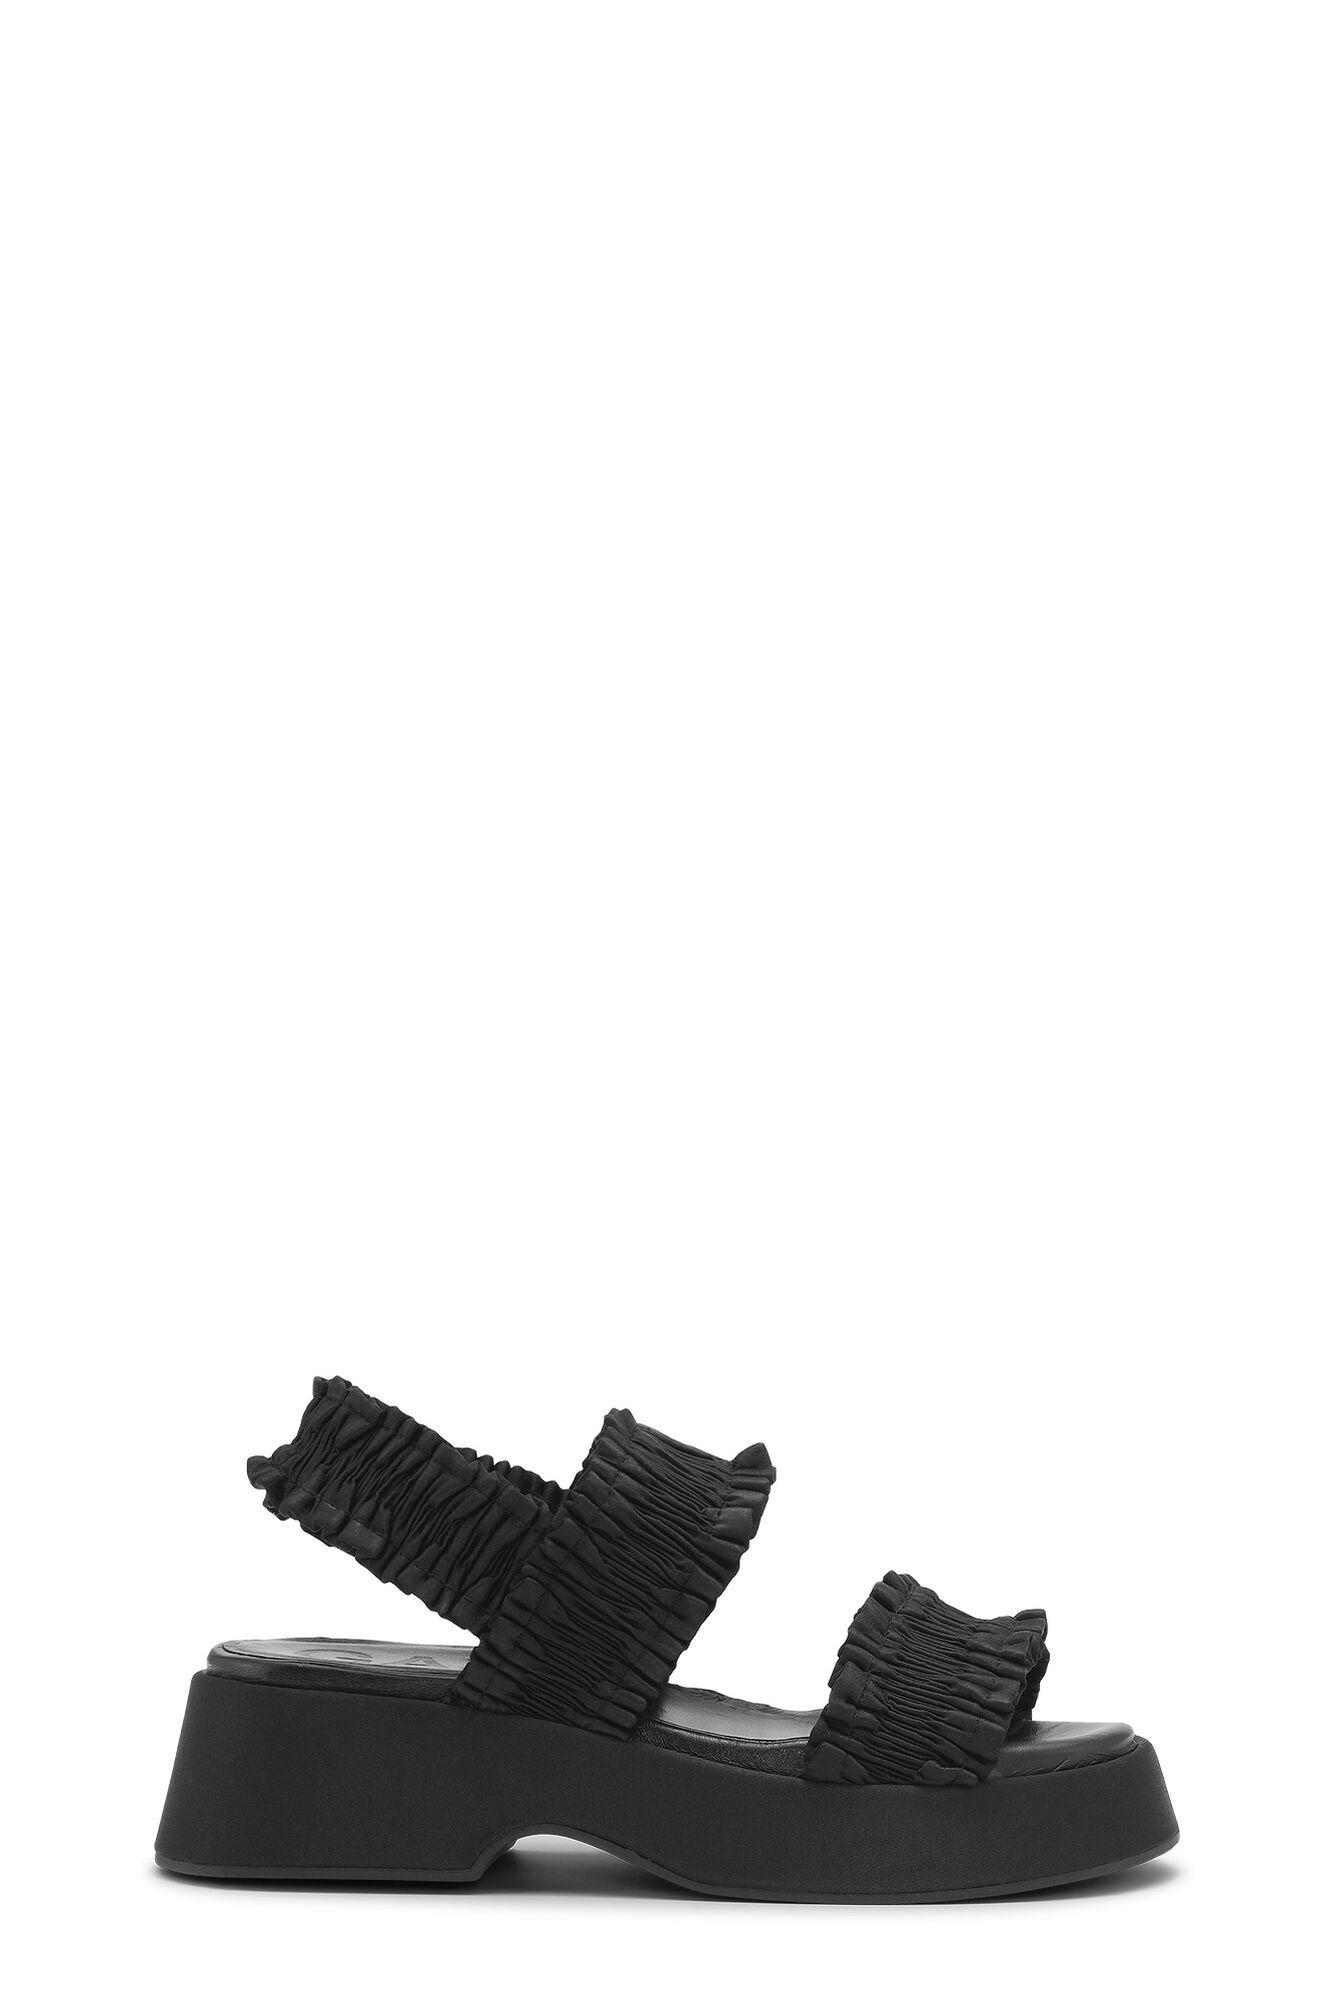 Black Smock Flatform Sandals | GANNI UK